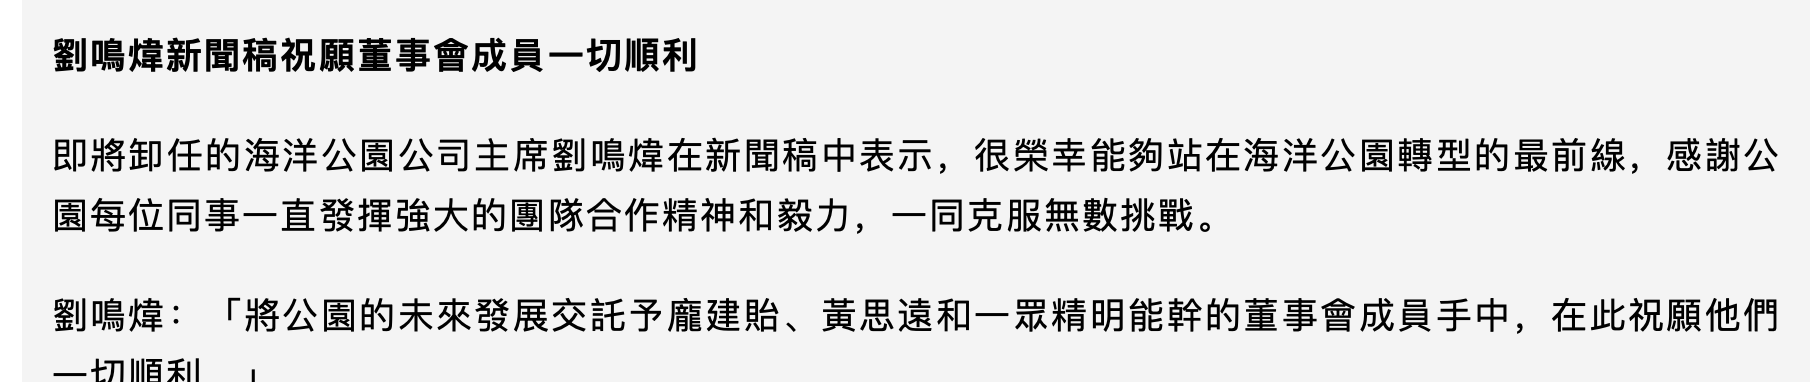 刘鸣炜不获续任海洋公园主席，任职两年困难重重，郑家纯女婿接任